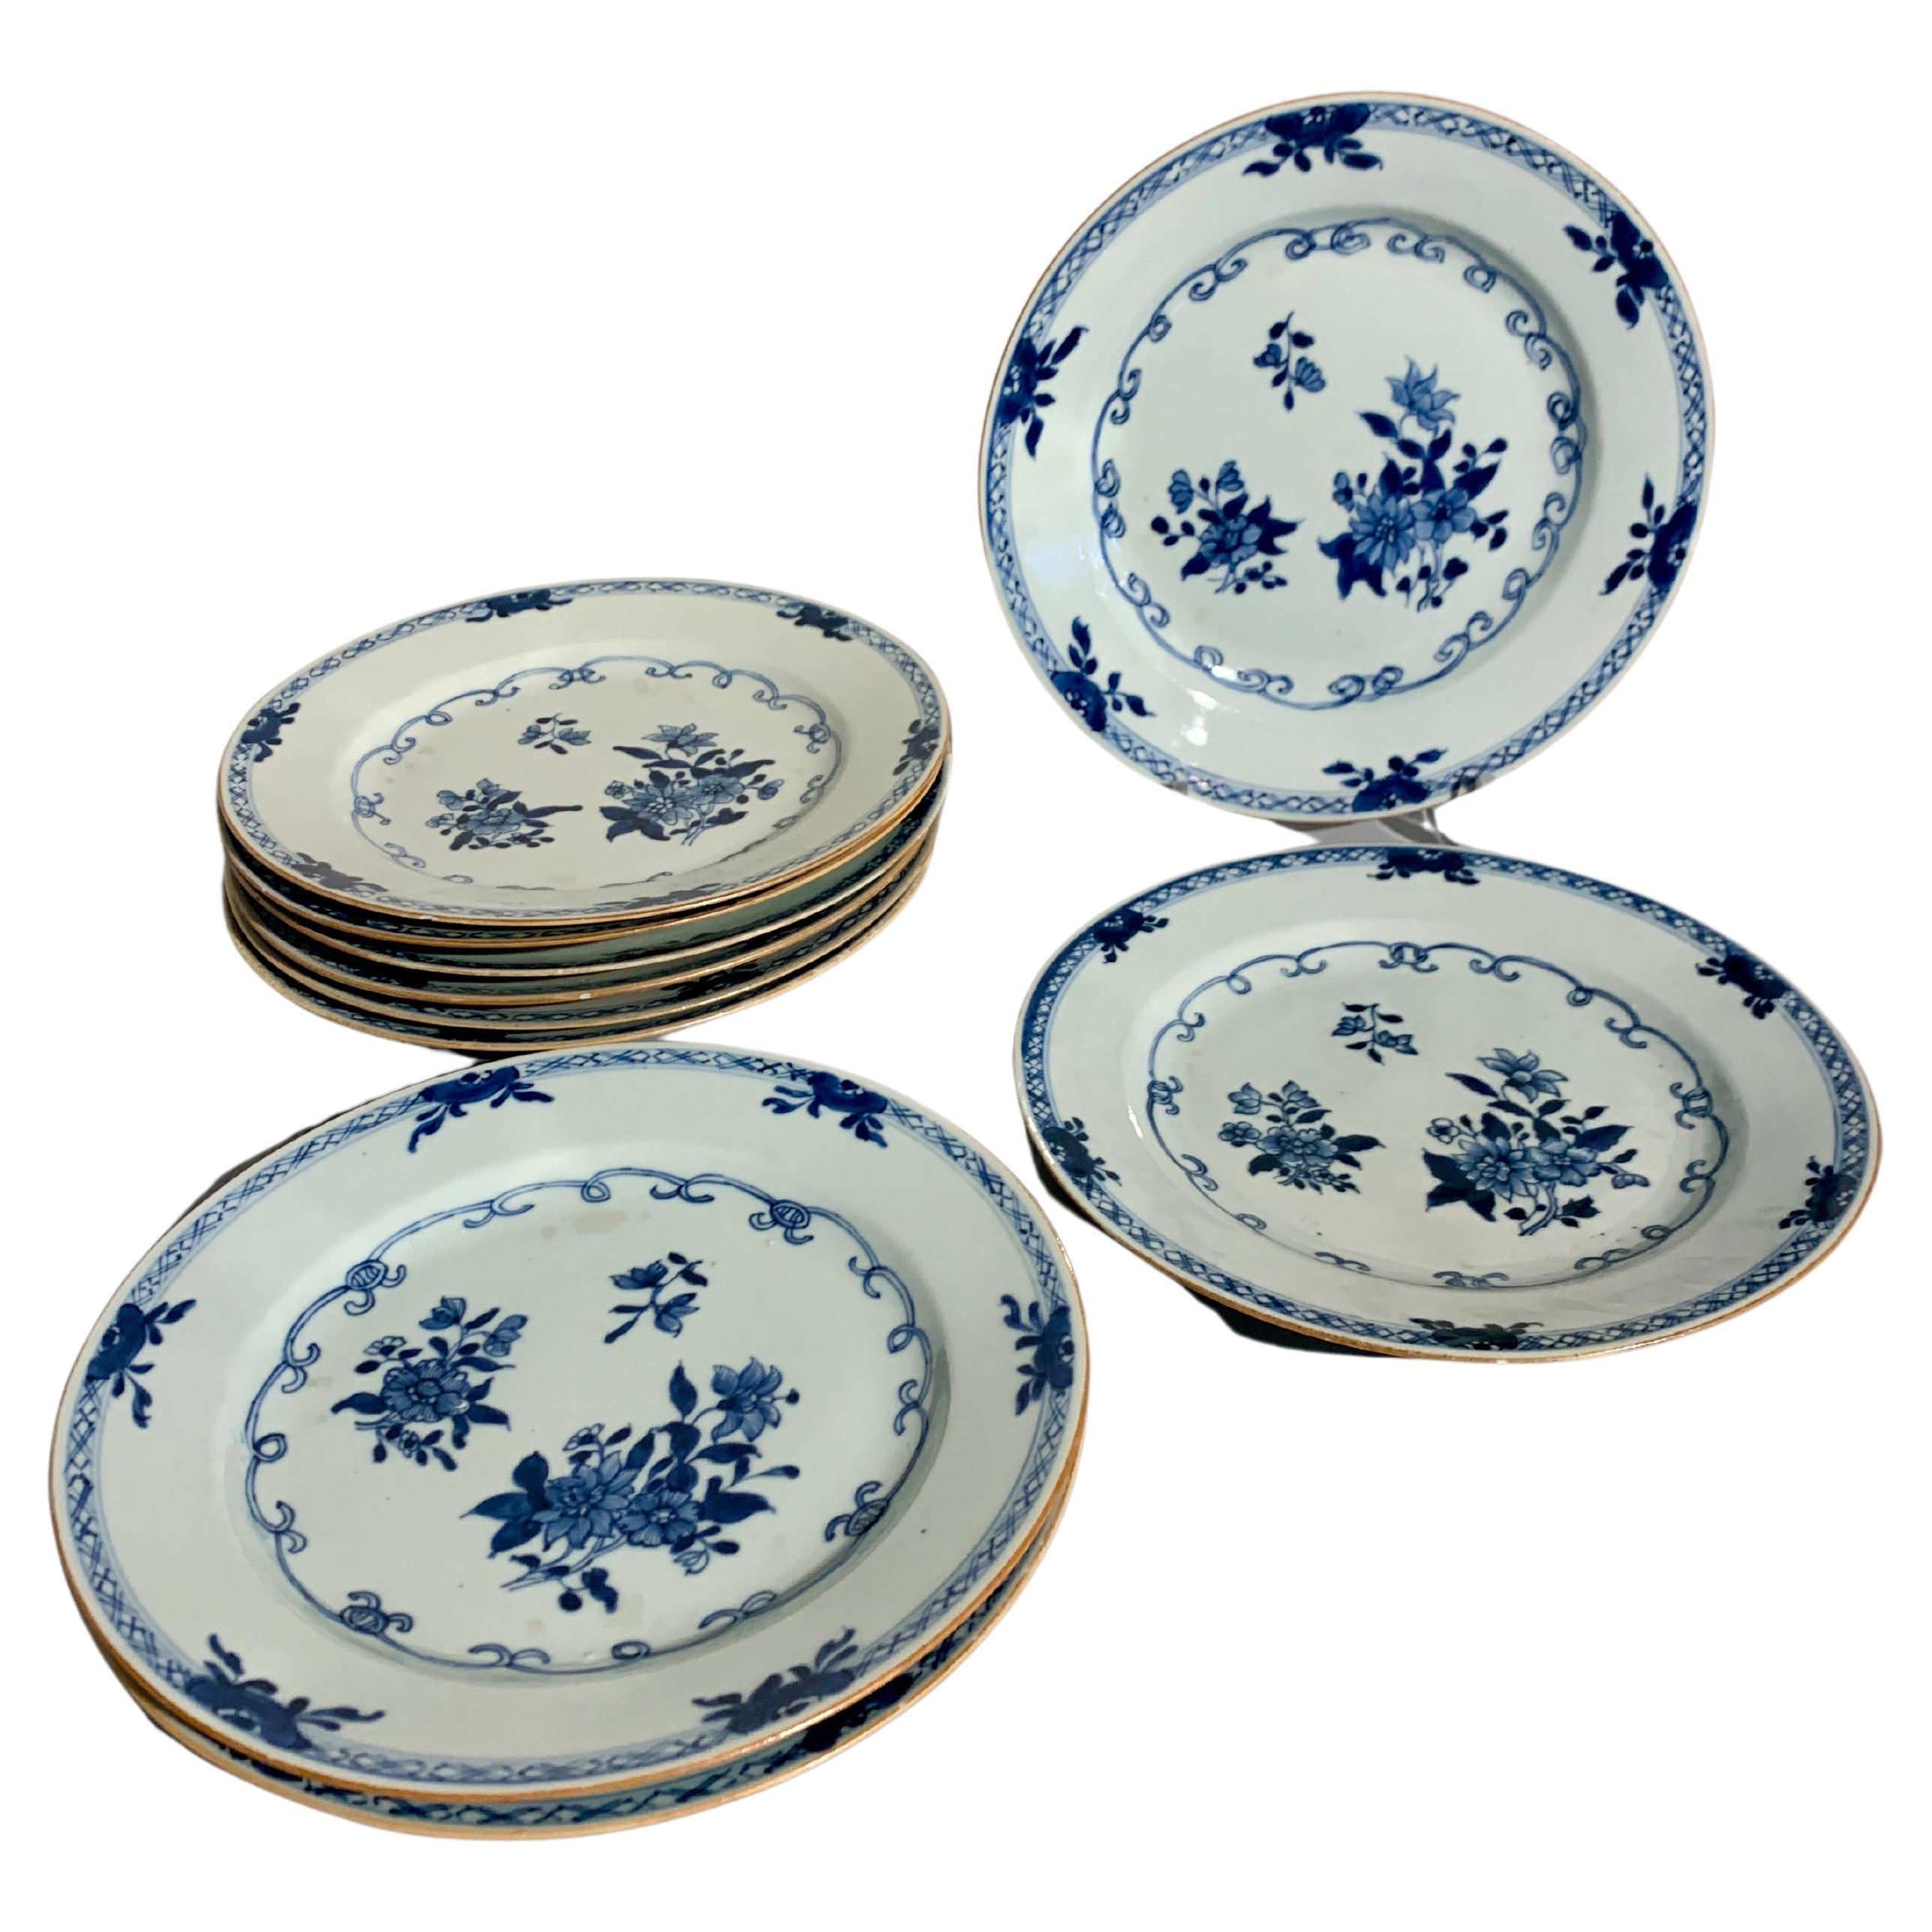 Chinesische Export-Porzellanteller in Blau und Weiß, 10er-Set, 18. Jahrhundert, China